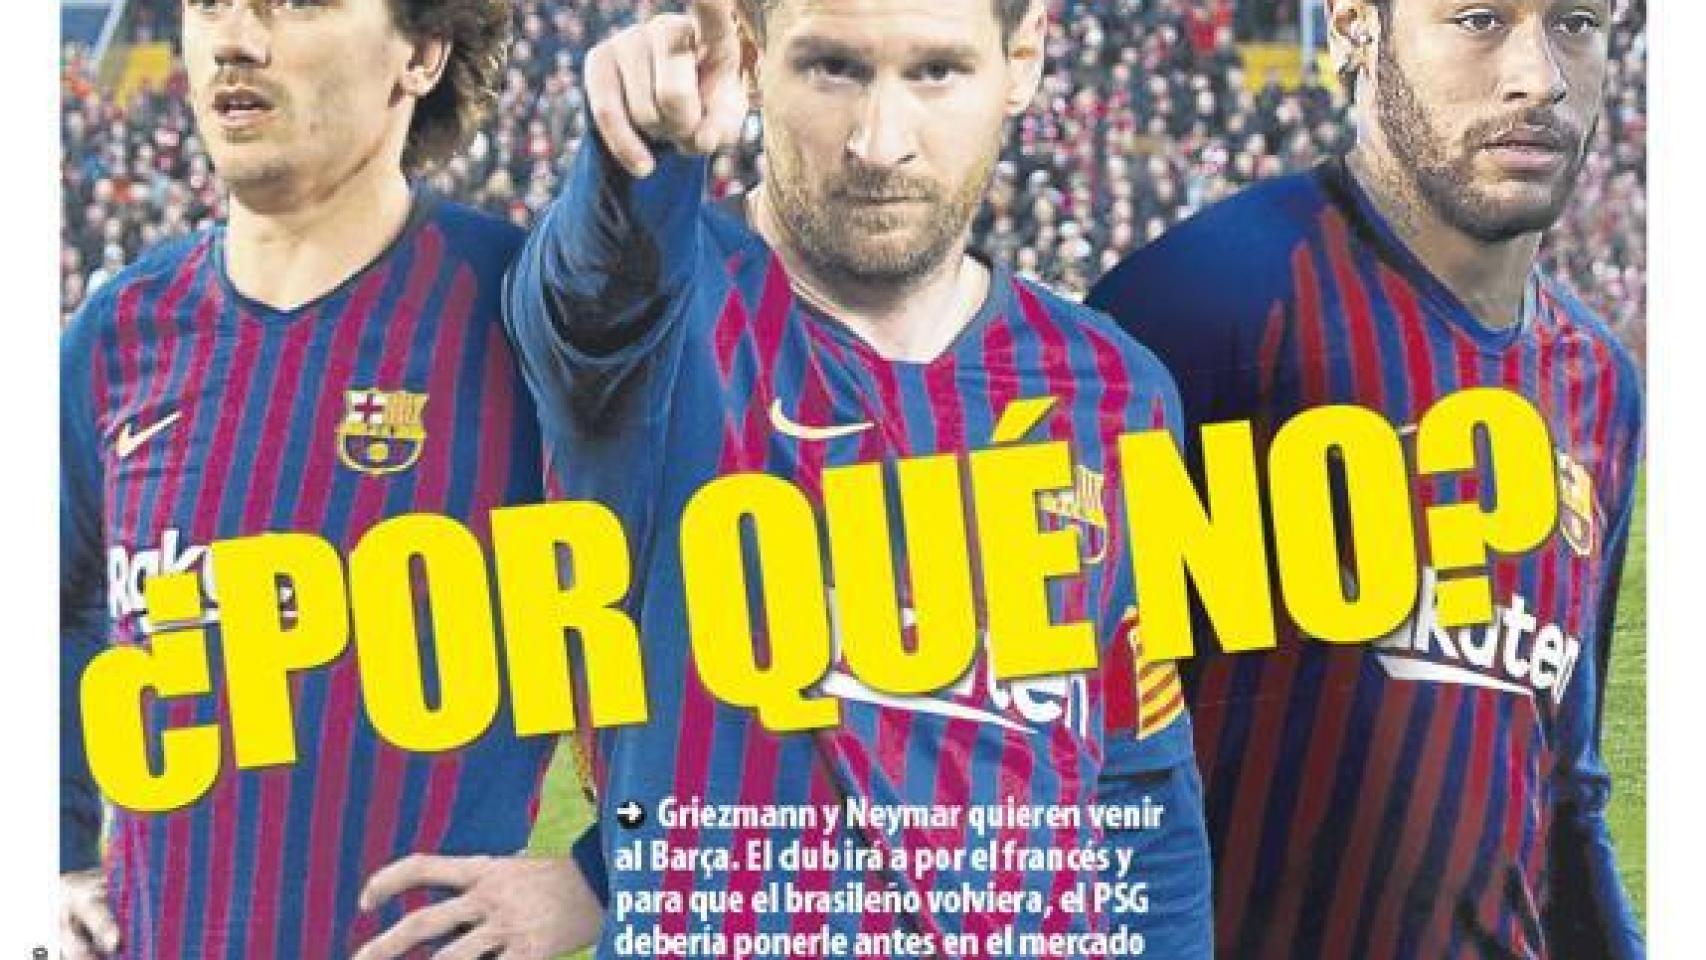 La portada del diario Mundo Deportivo (01/06/2019)